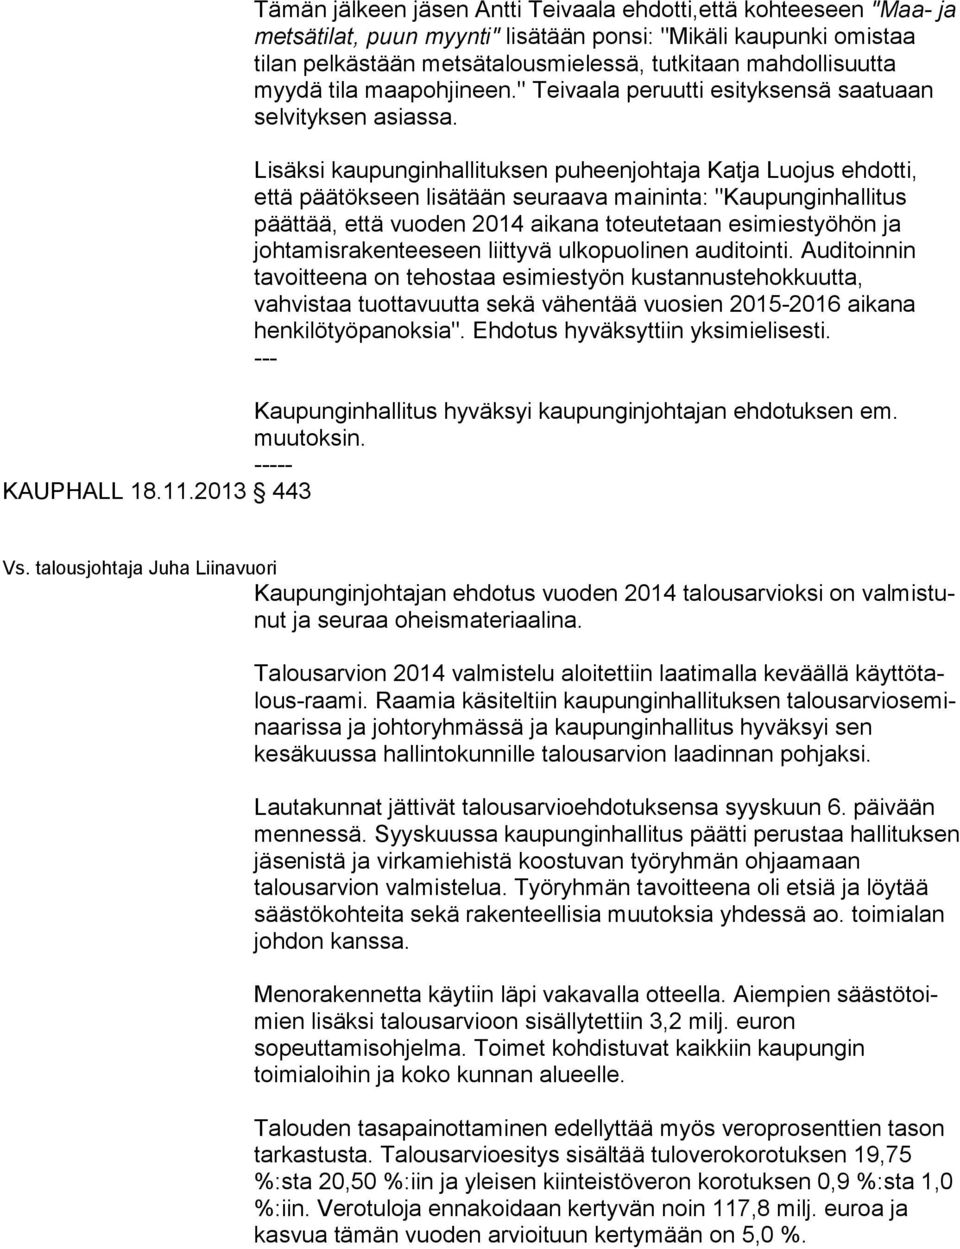 Lisäksi kaupunginhallituksen puheenjohtaja Katja Luojus eh dot ti, että päätökseen lisätään seuraava maininta: "Kau pun gin hal li tus päättää, että vuoden 2014 aikana toteutetaan esimiestyöhön ja